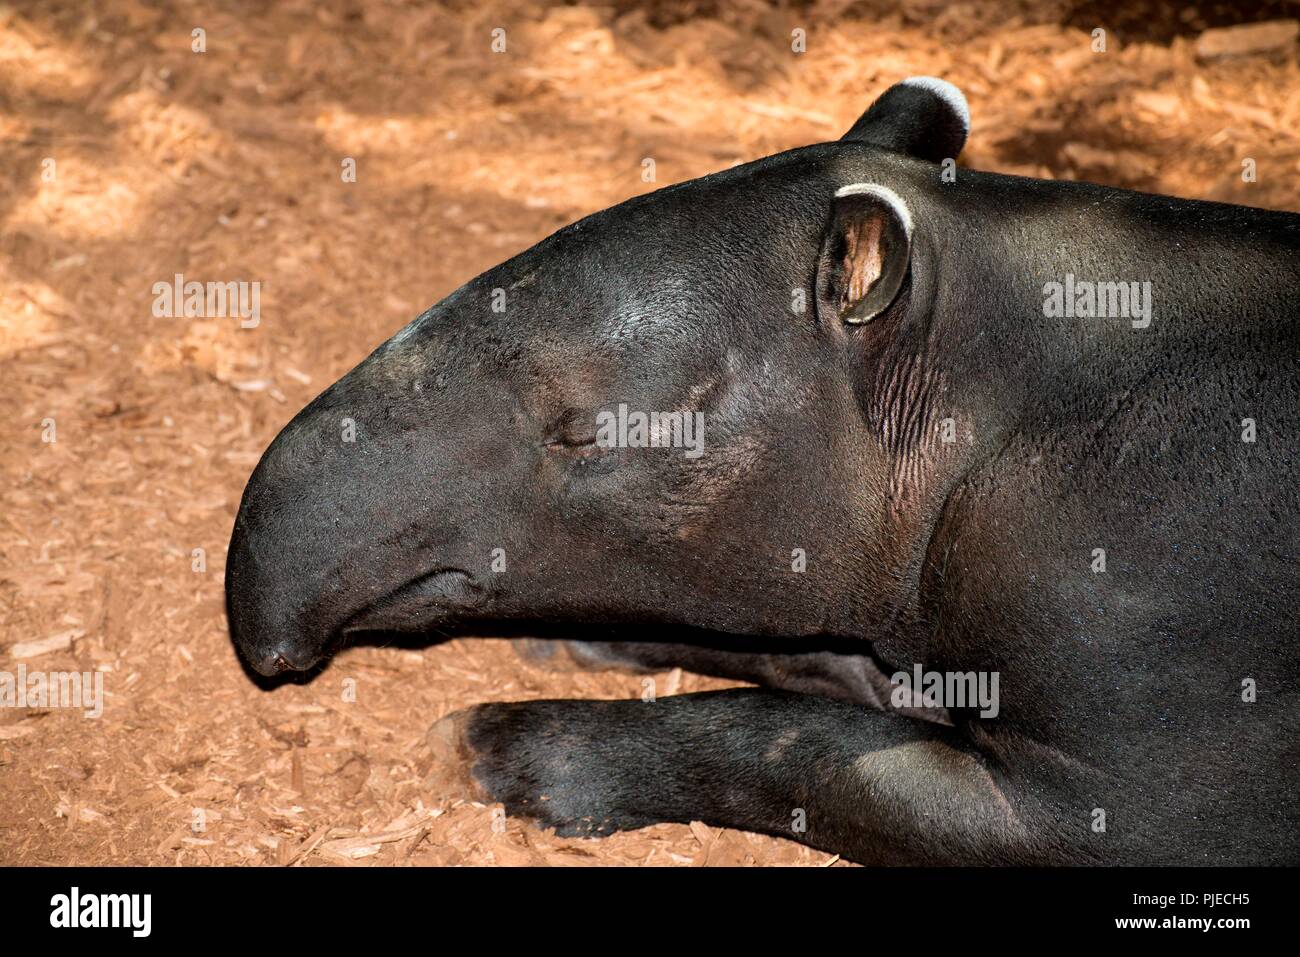 Malayan Tapir, Tapirus inducus. Closeup head shot. Stock Photo